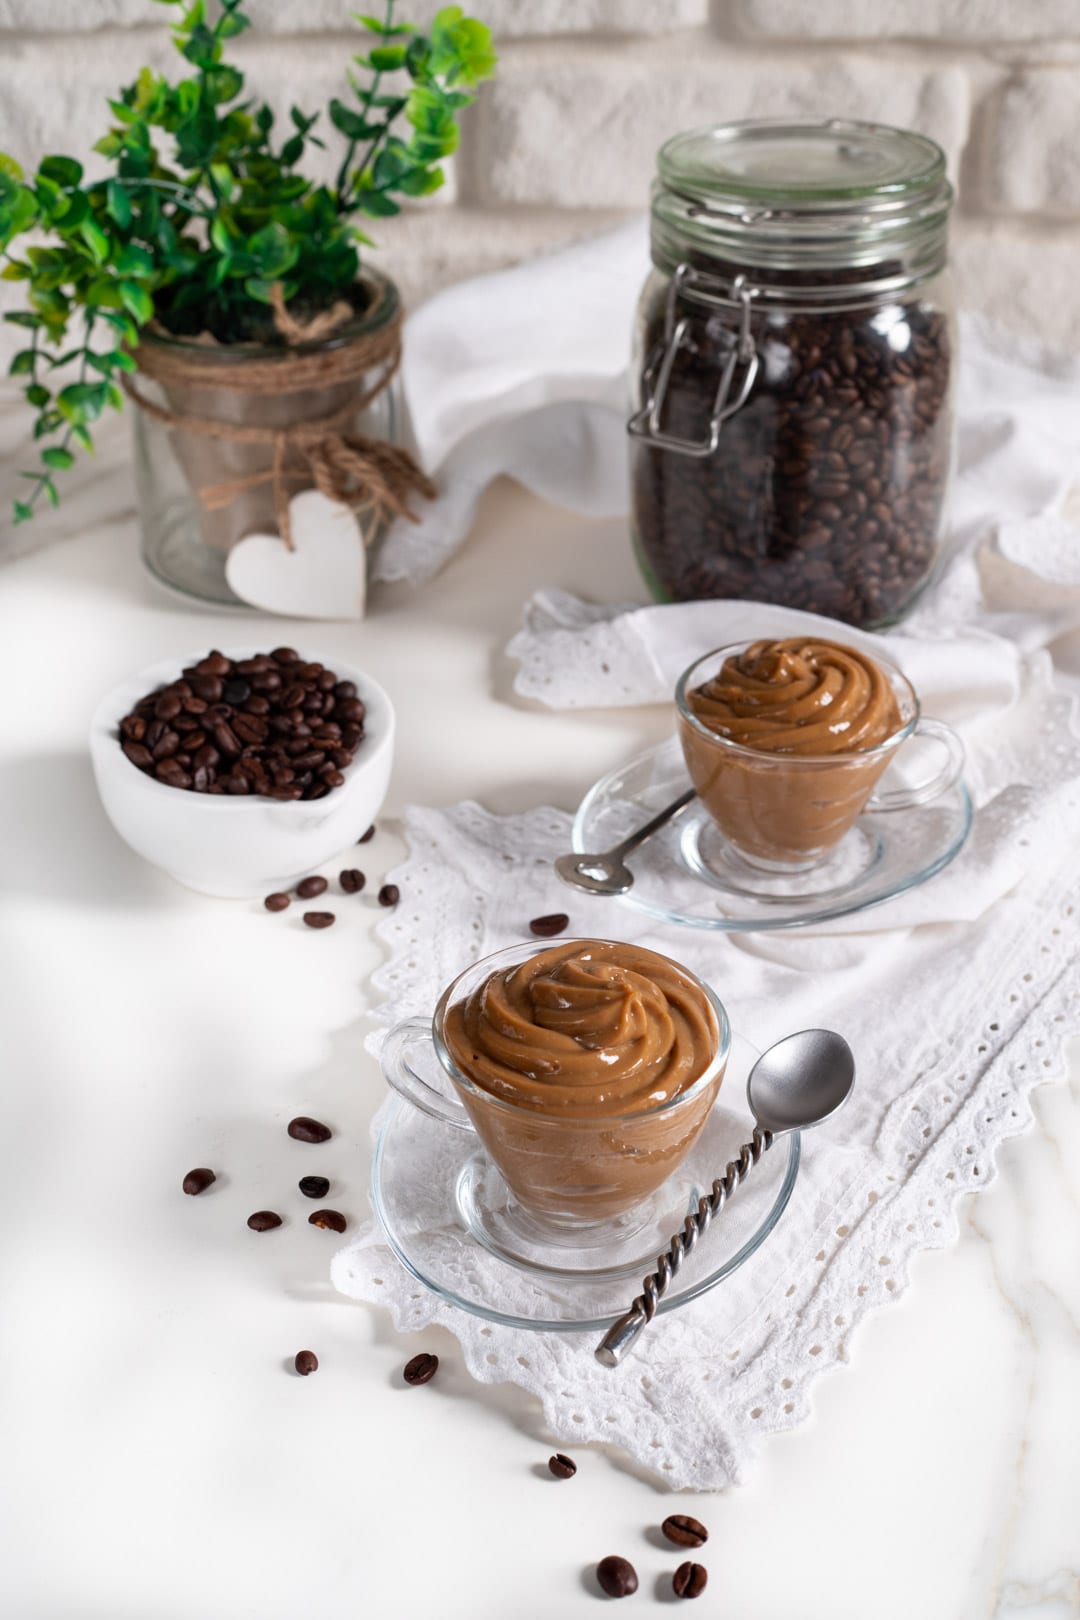 Crema pasticciera al caffè con uova e chicco di caffè ricetta facile e veloce cremosa